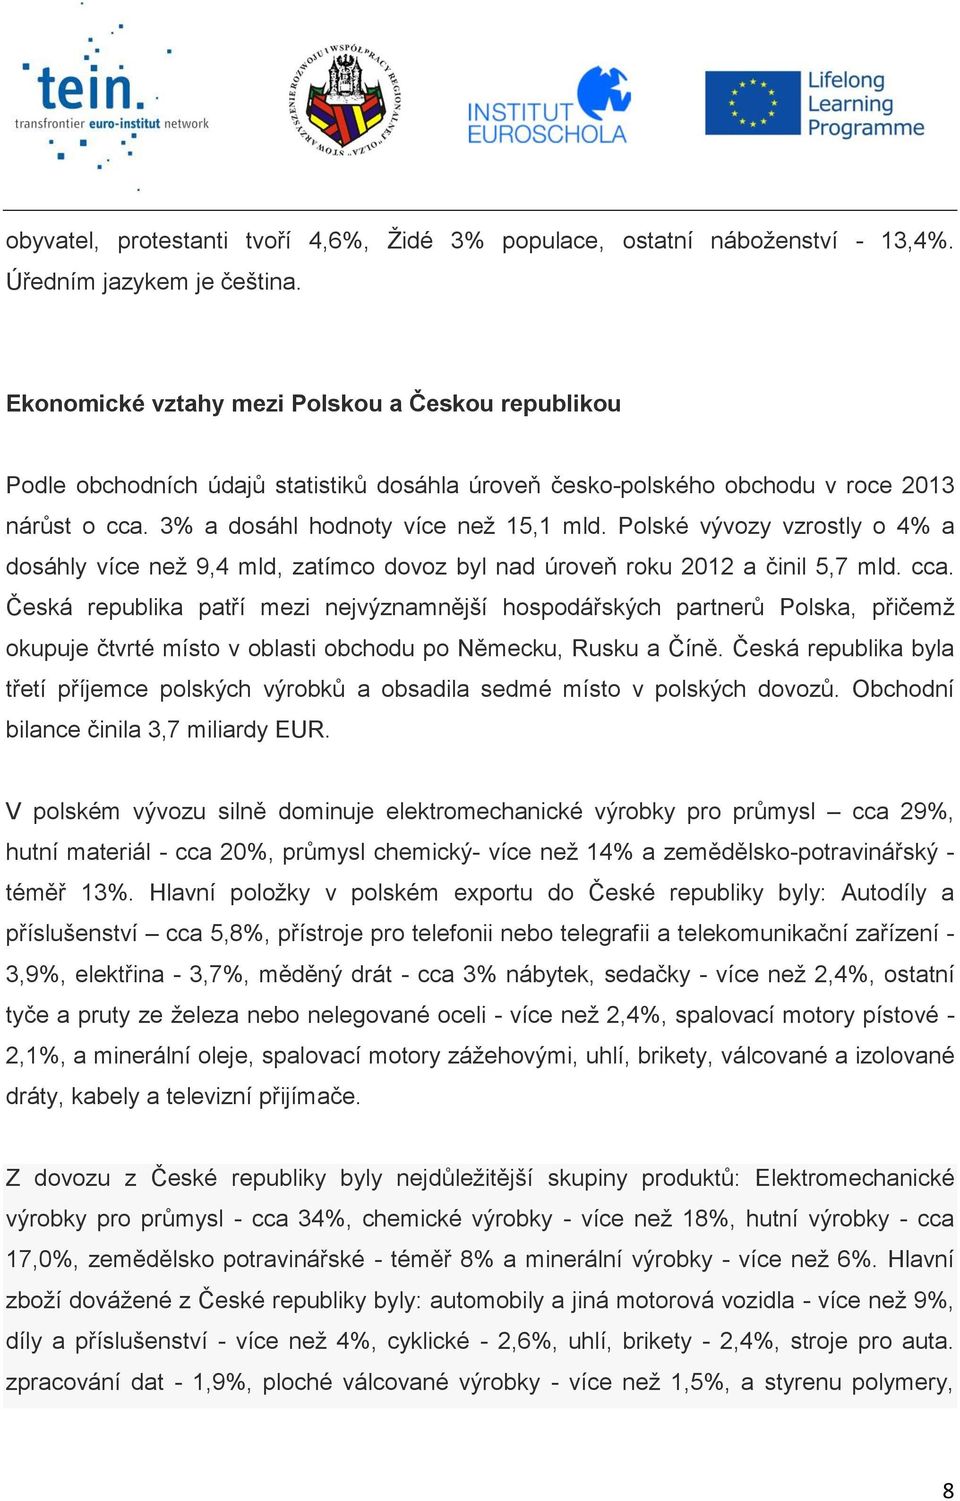 Polské vývozy vzrostly o 4% a dosáhly více než 9,4 mld, zatímco dovoz byl nad úroveň roku 2012 a činil 5,7 mld. cca.